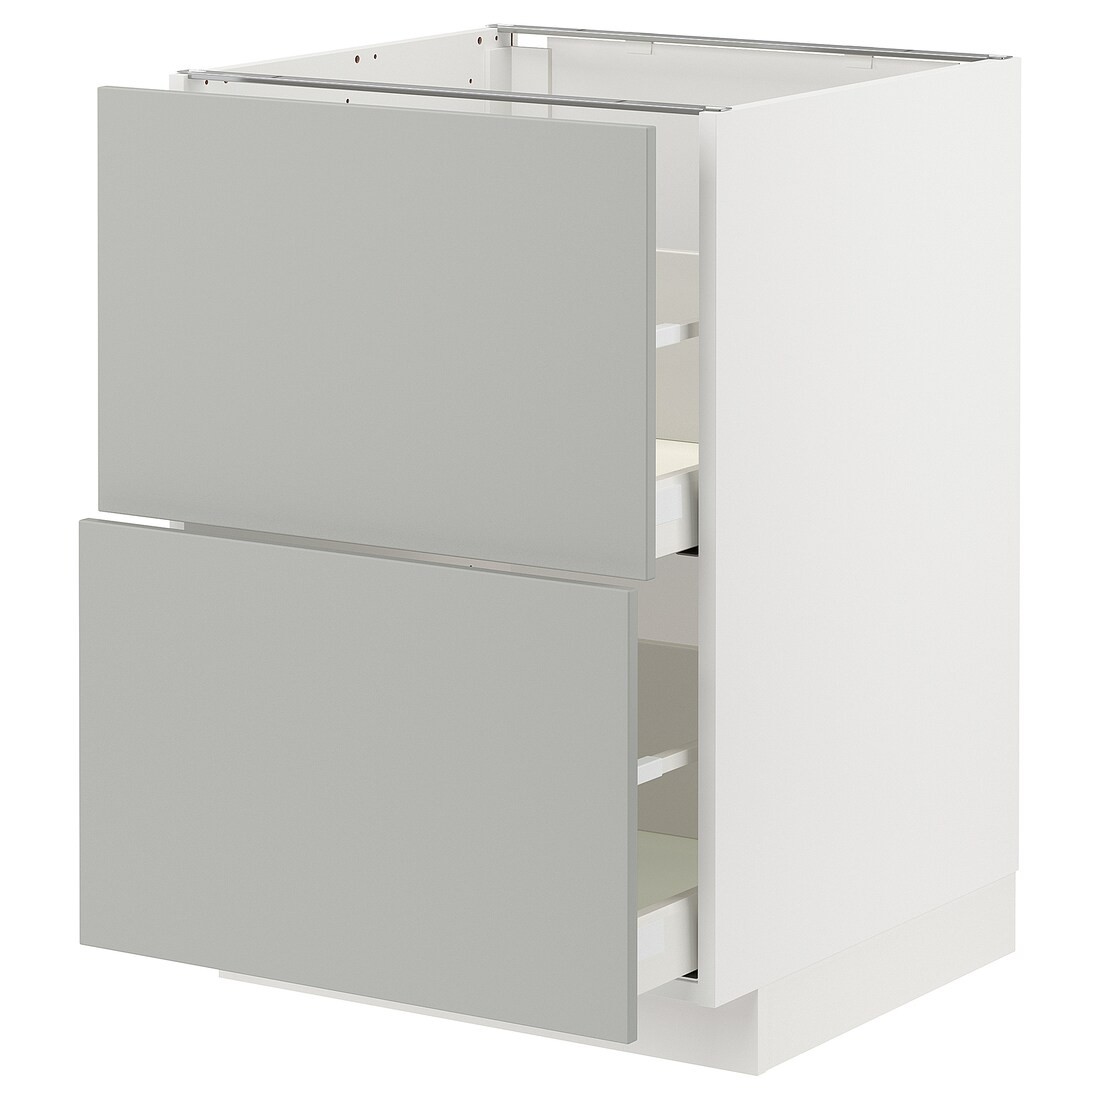 METOD / MAXIMERA Напольный шкаф с ящиками, белый / Хавсторп светло-серый, 60x60 см